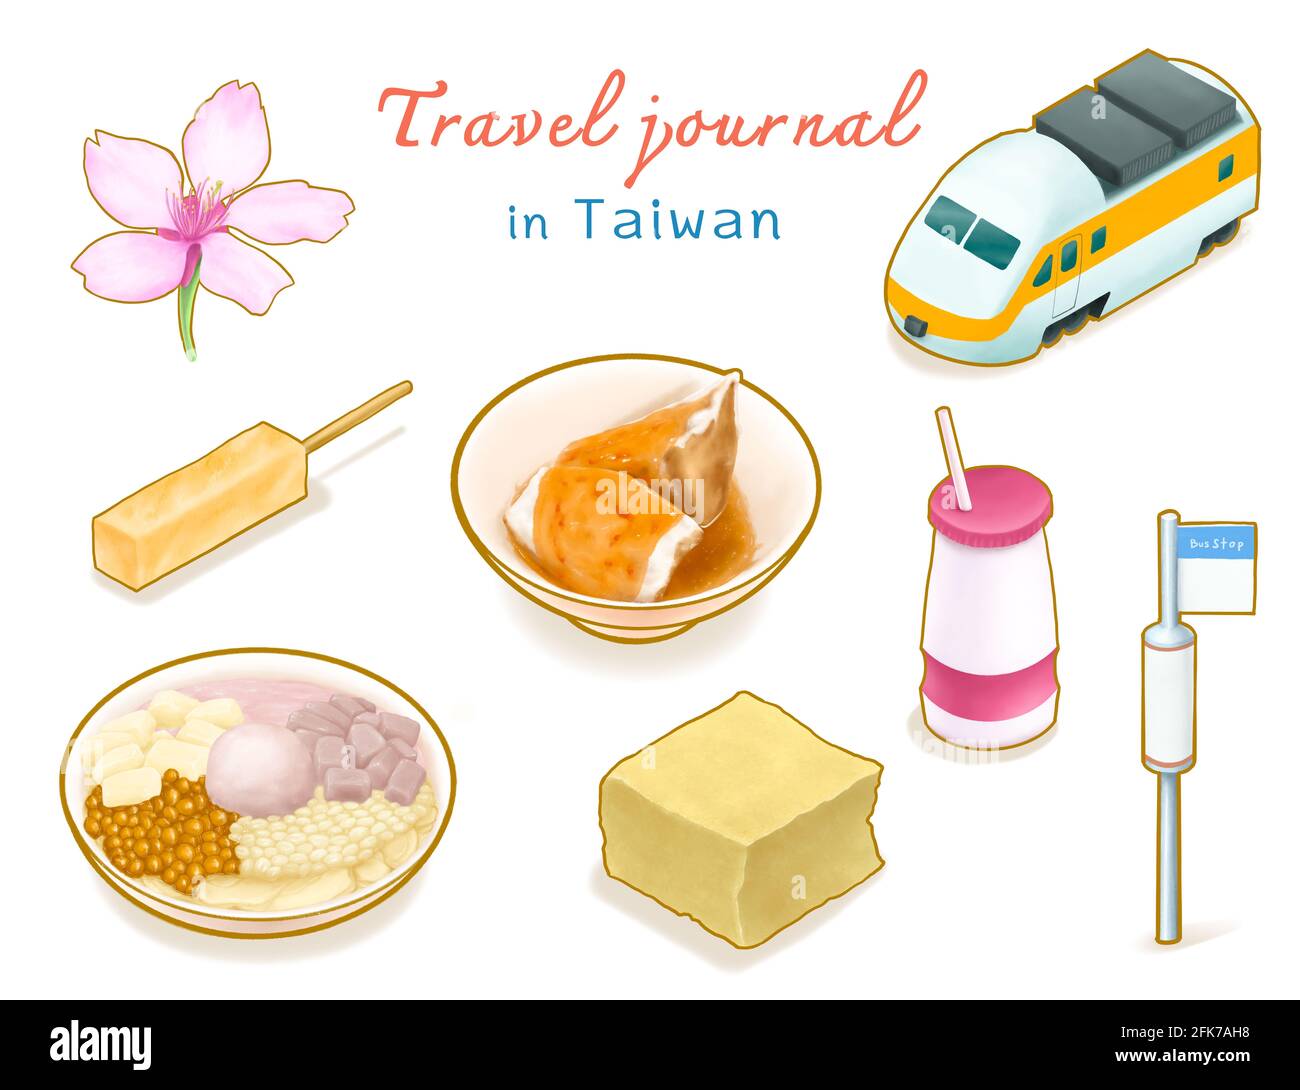 Travel Journal dans la collection de Taïwan, peinture numérique de sakura, train express, arrêt de bus, boisson de yogourt et taïwanais nourriture Isométrique icône rast Banque D'Images